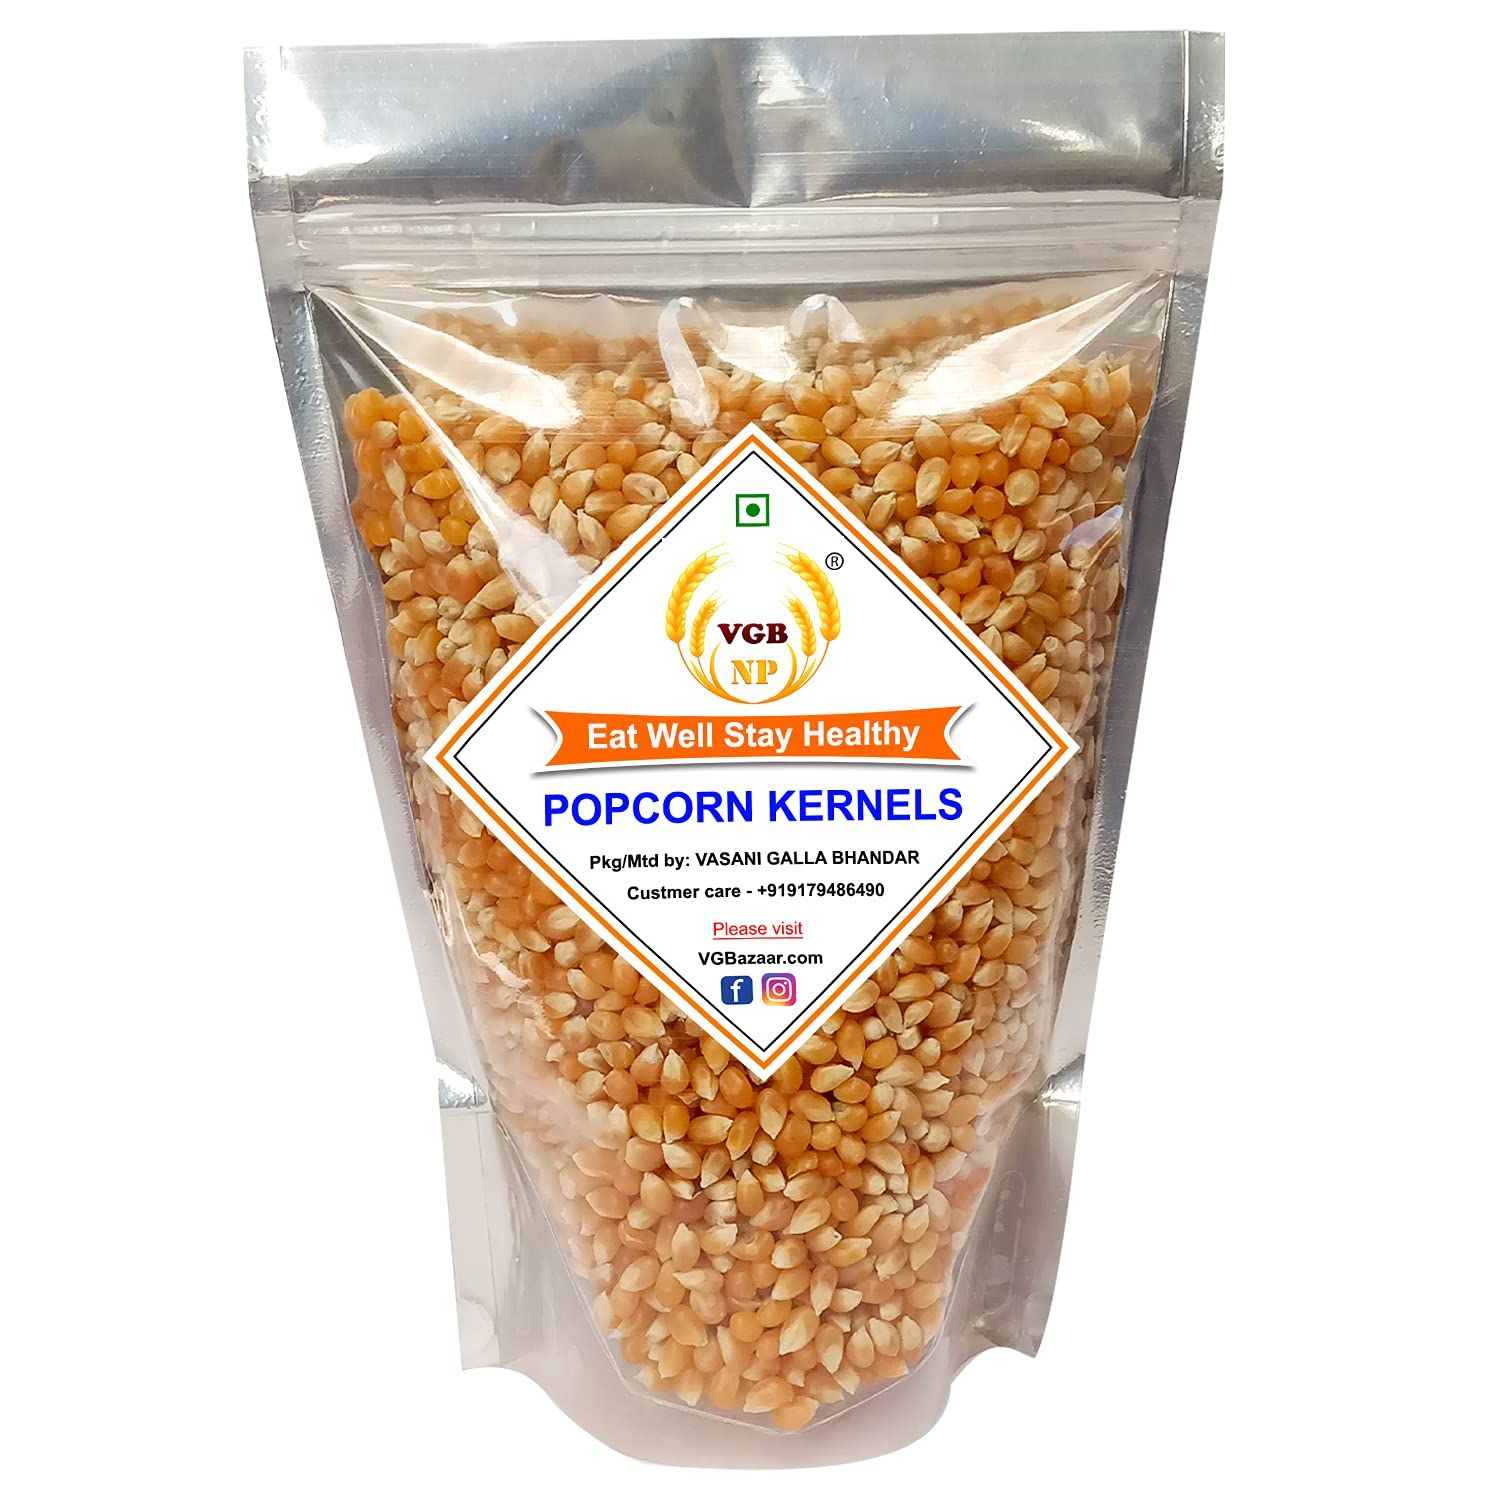 VGBNP Popcorn Kernels Seeds Image